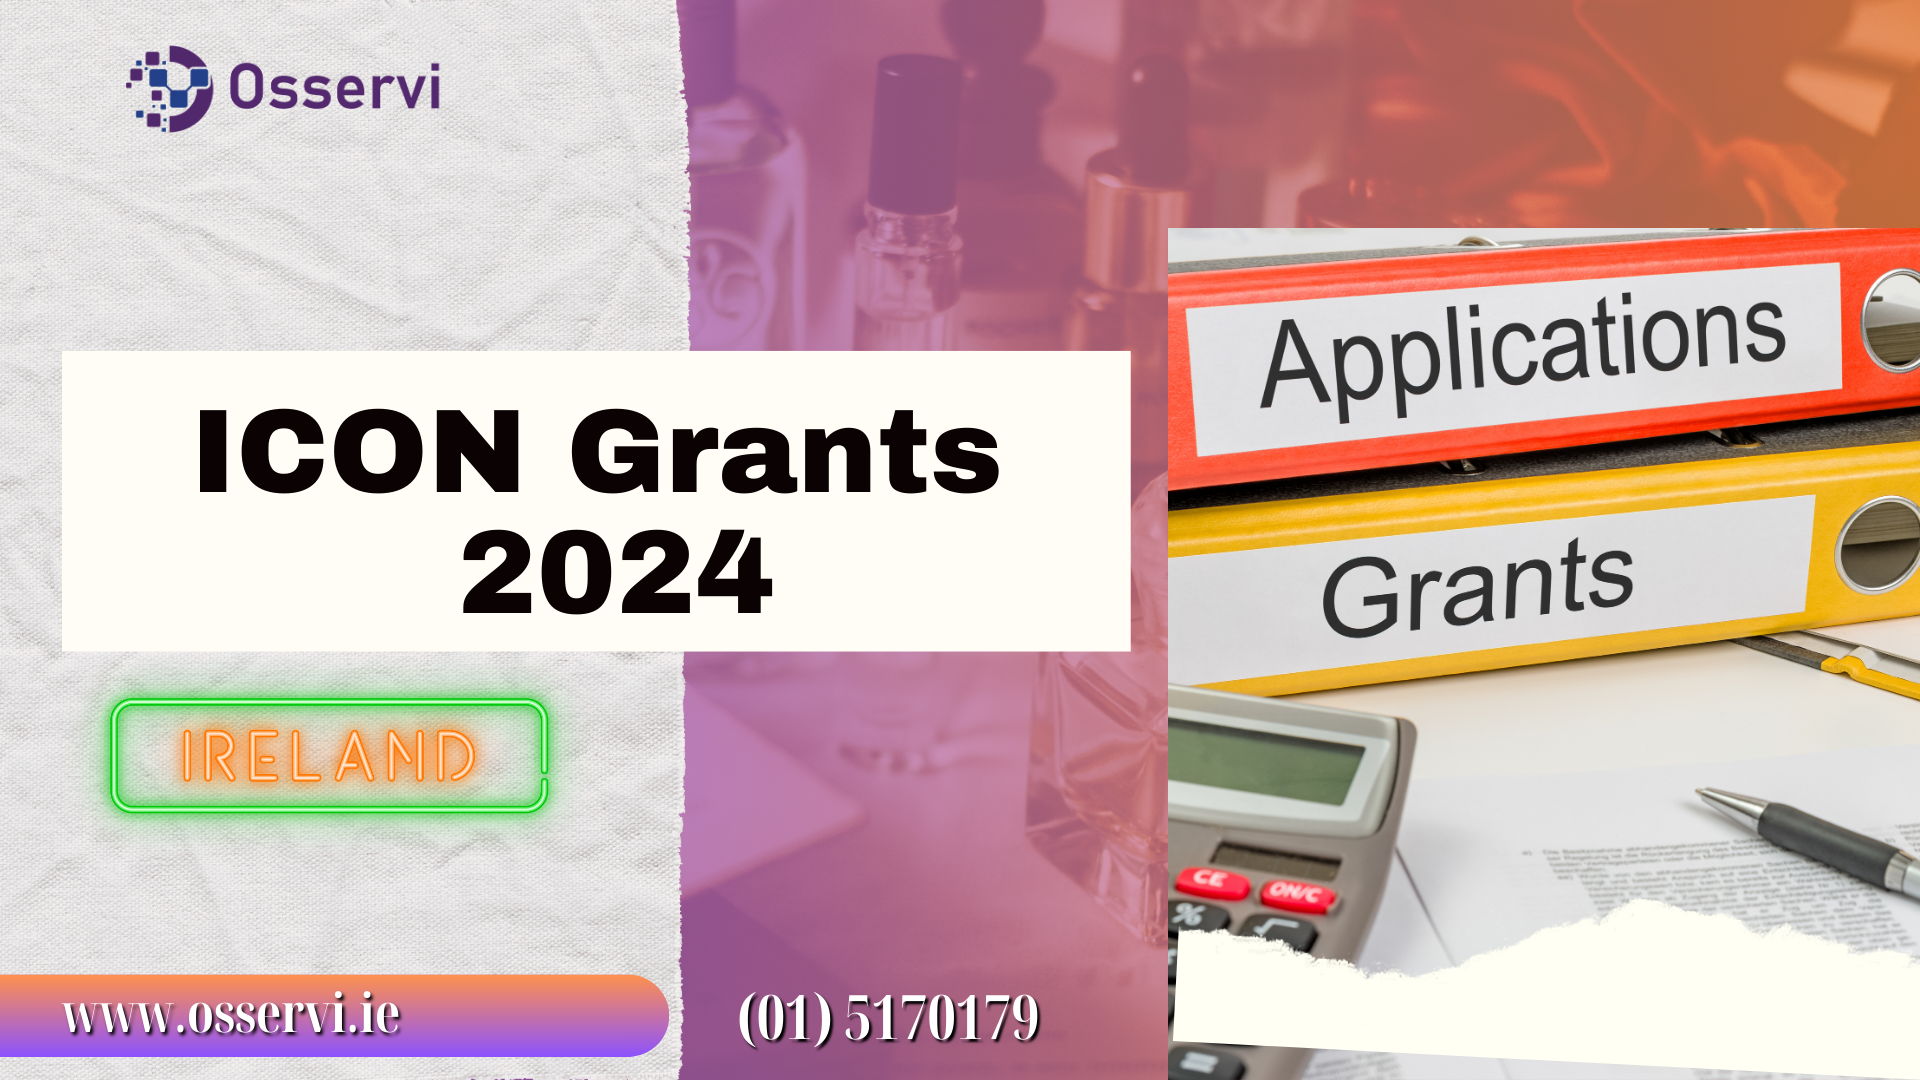 ICON Grants 2024